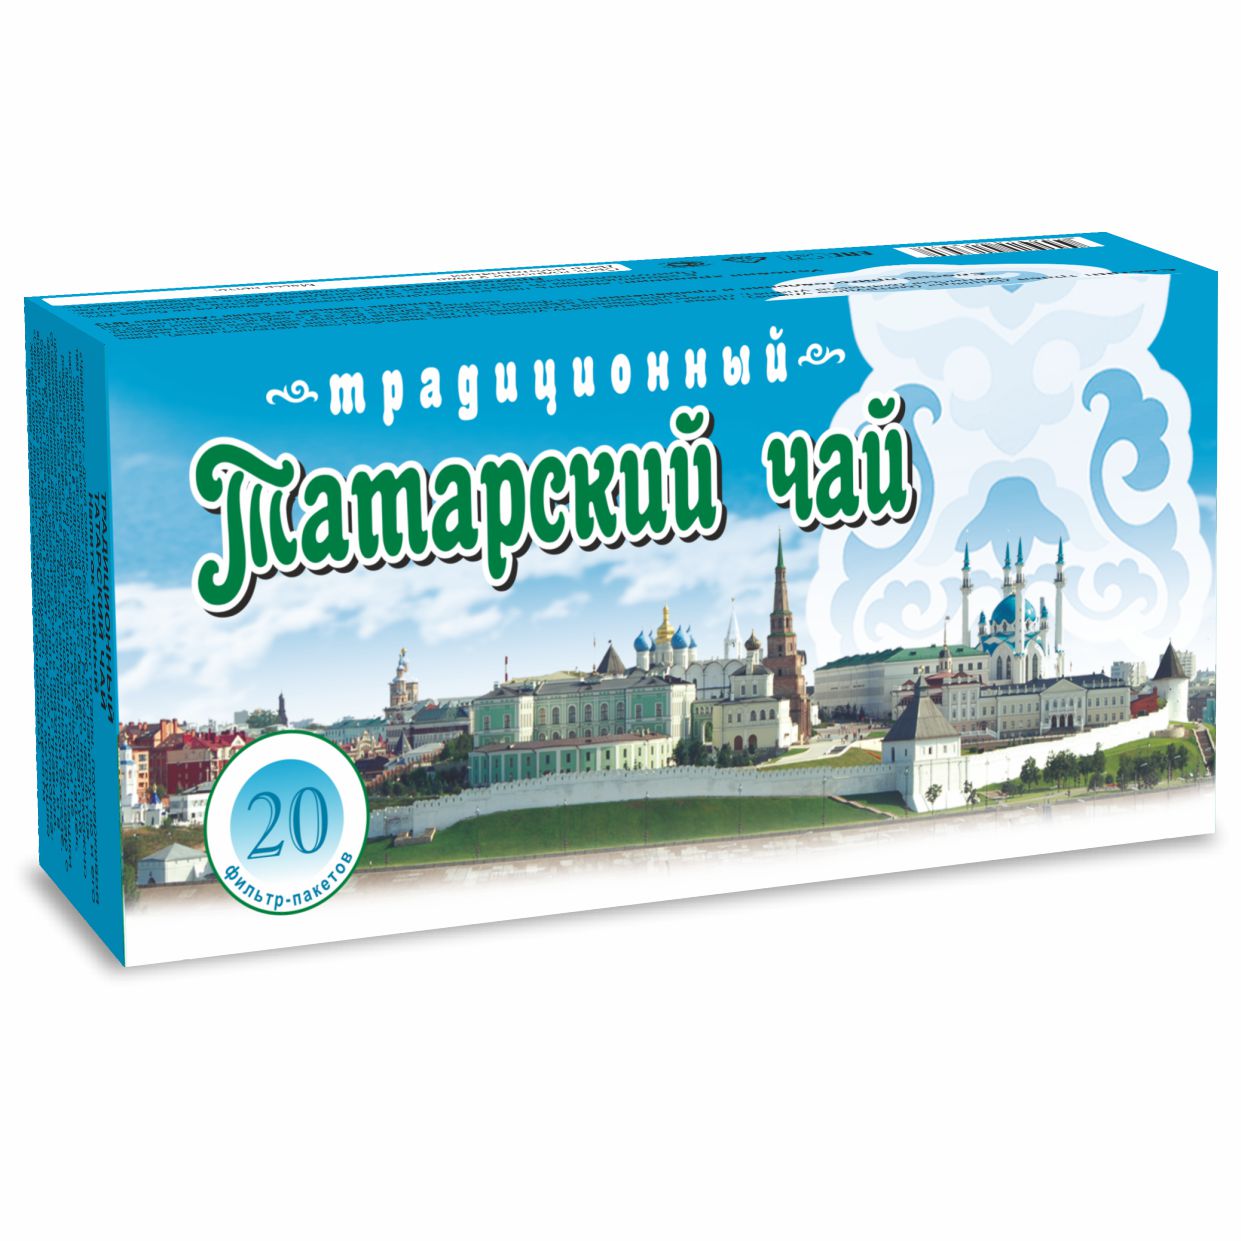 Татарский традиционный чай, фильтр-пакеты, 20 шт.